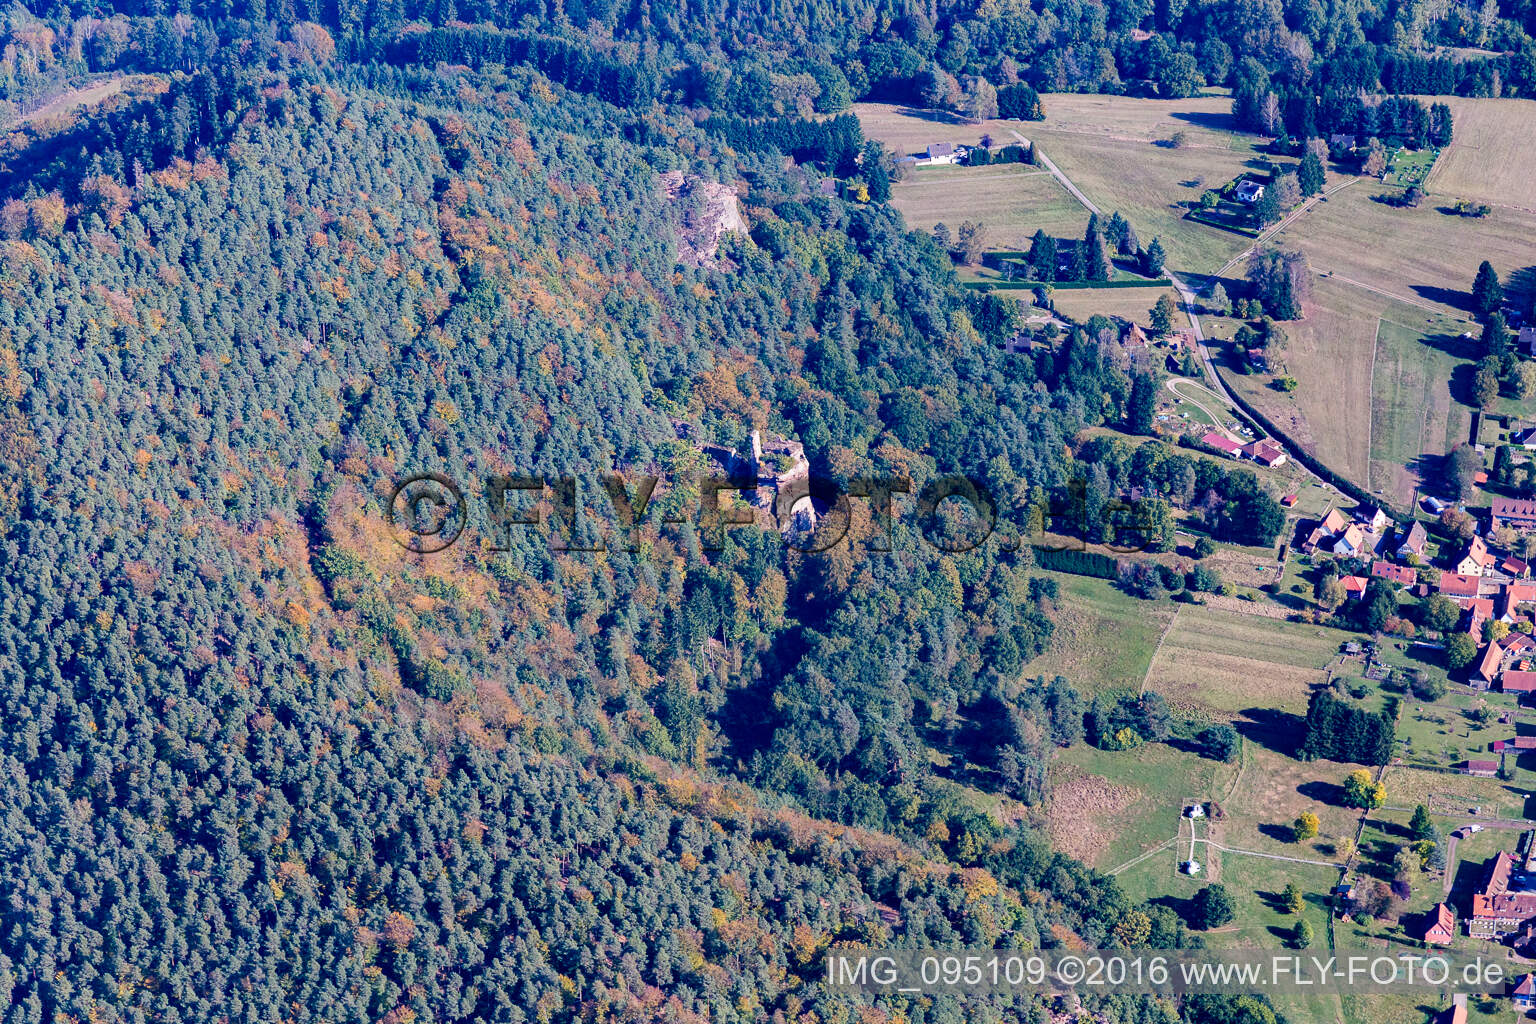 Vue aérienne de Château Petit Arnsberg à Obersteinbach dans le département Bas Rhin, France